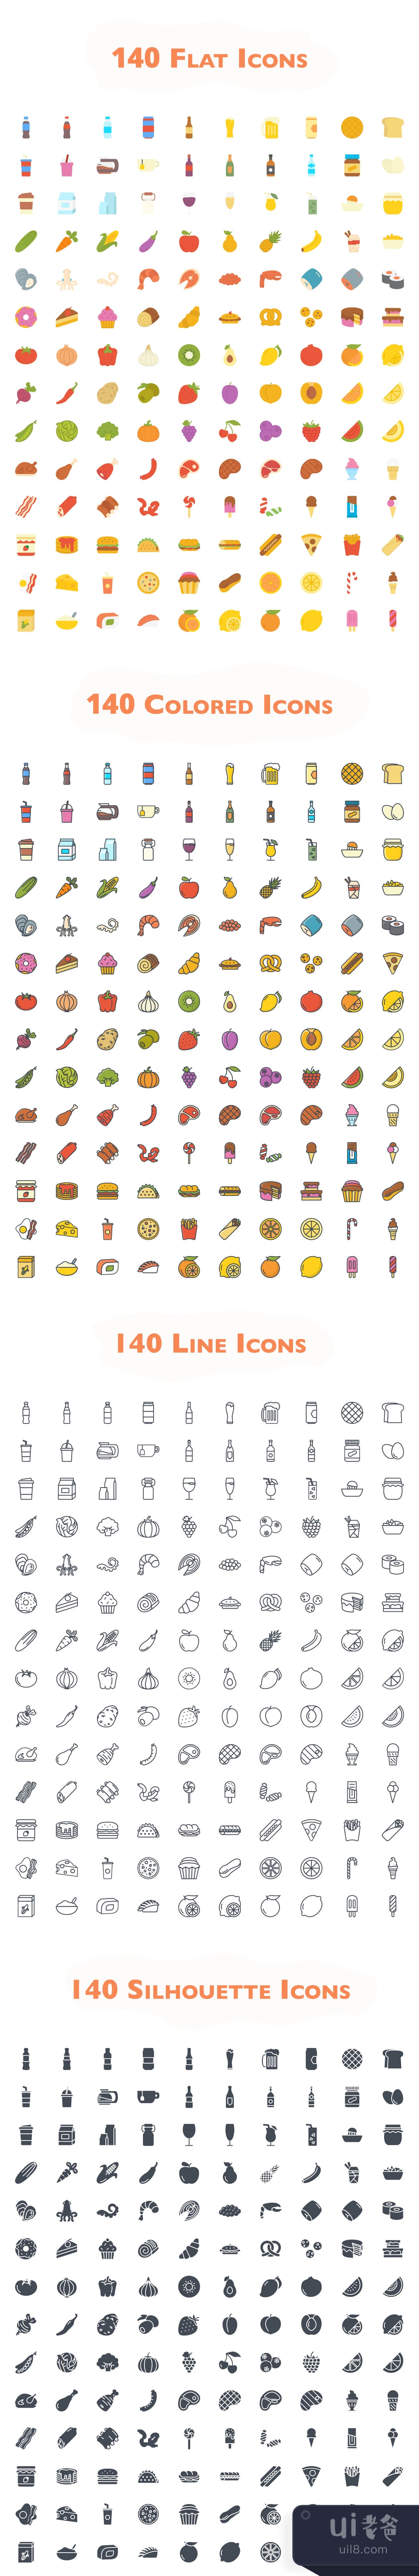 560个食品图标 (560 Food Icons)插图1